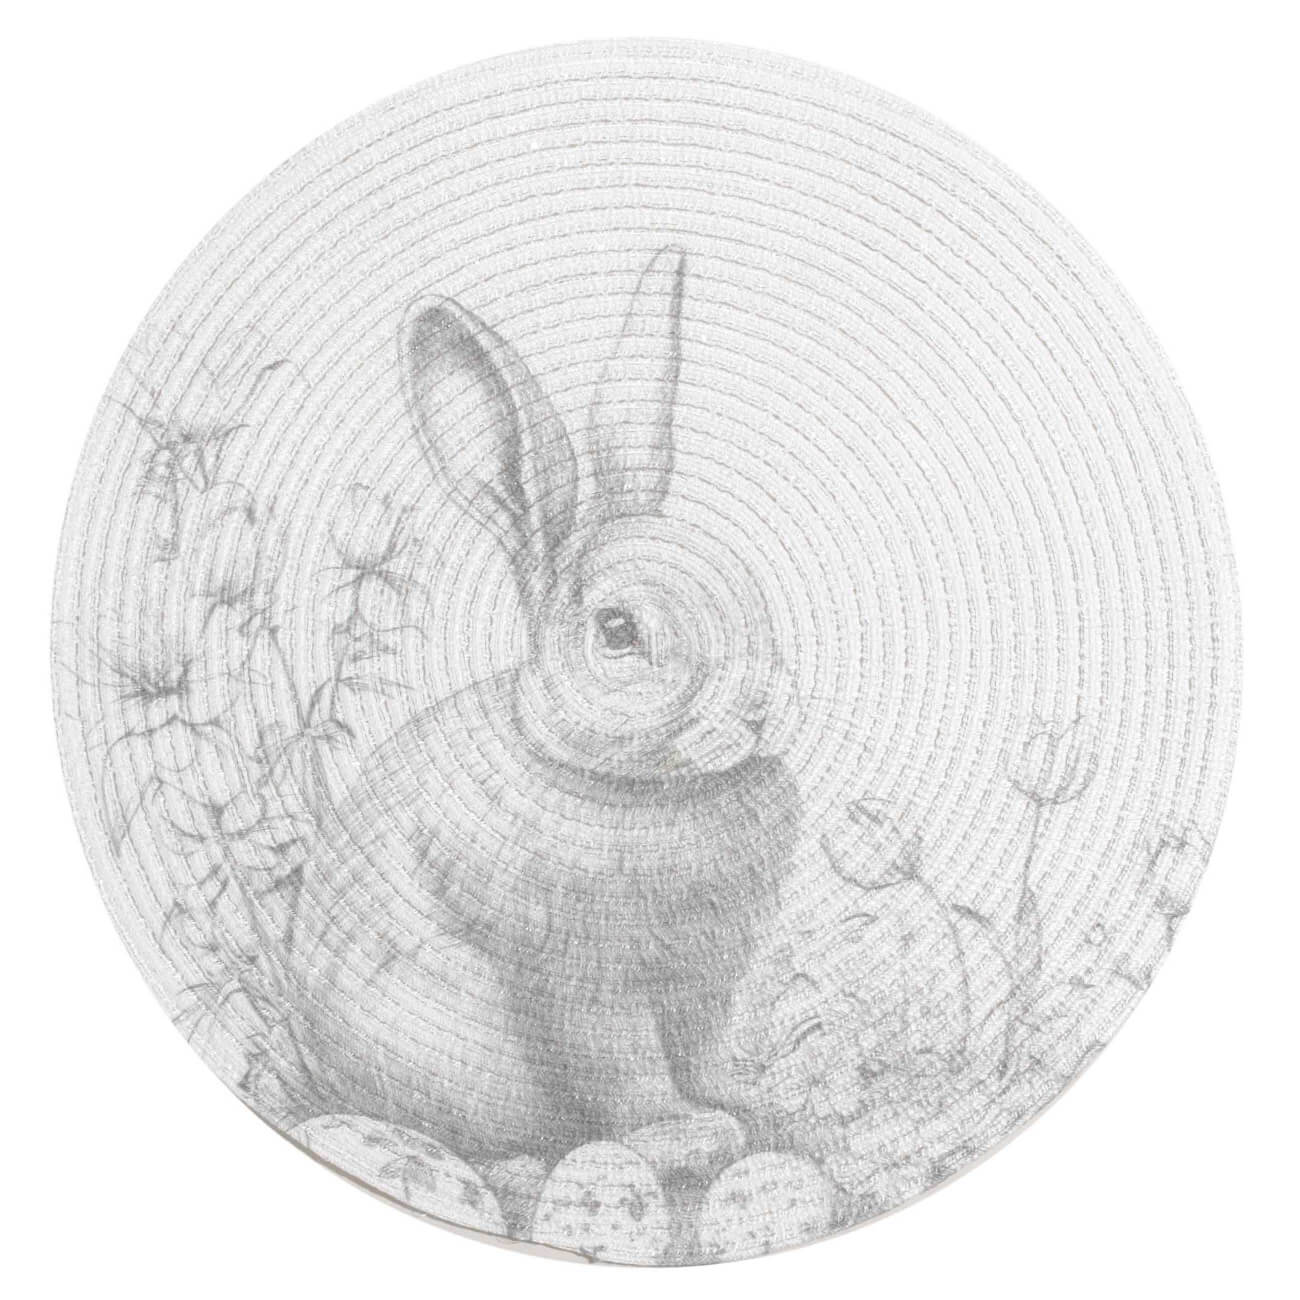 Салфетка под приборы, 38 см, полиэстер, круглая, белая, Графичный кролик, Rotary print полировочная замшевая салфетка главдор